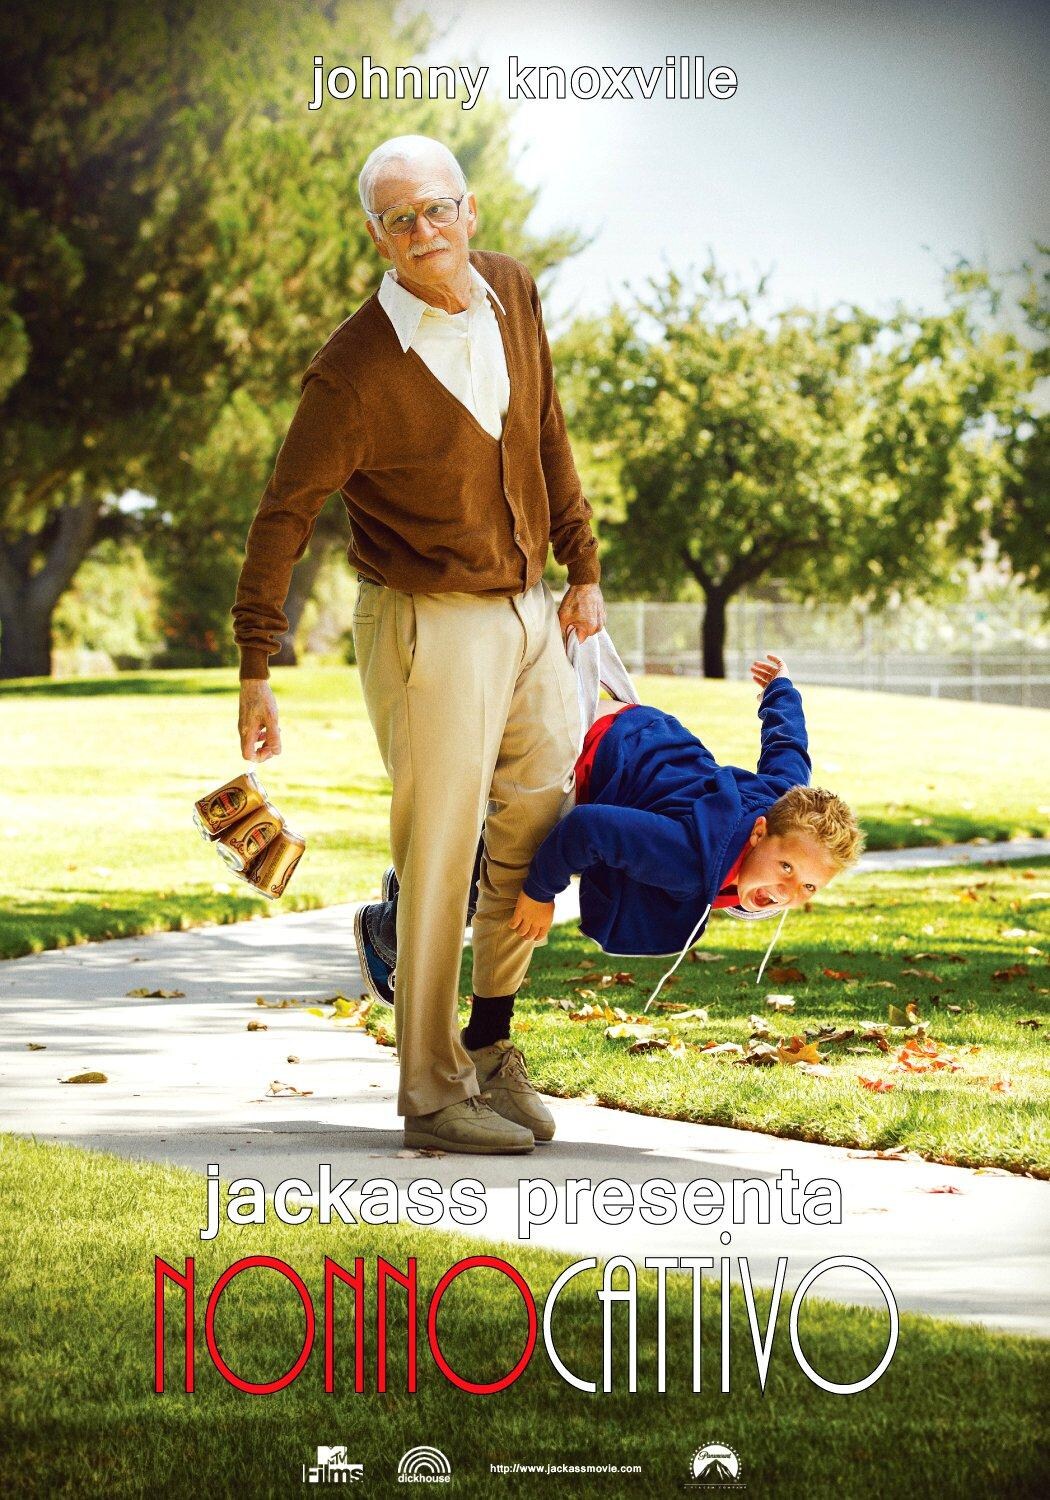 Jackass: Nonno cattivo [HD] (2013)